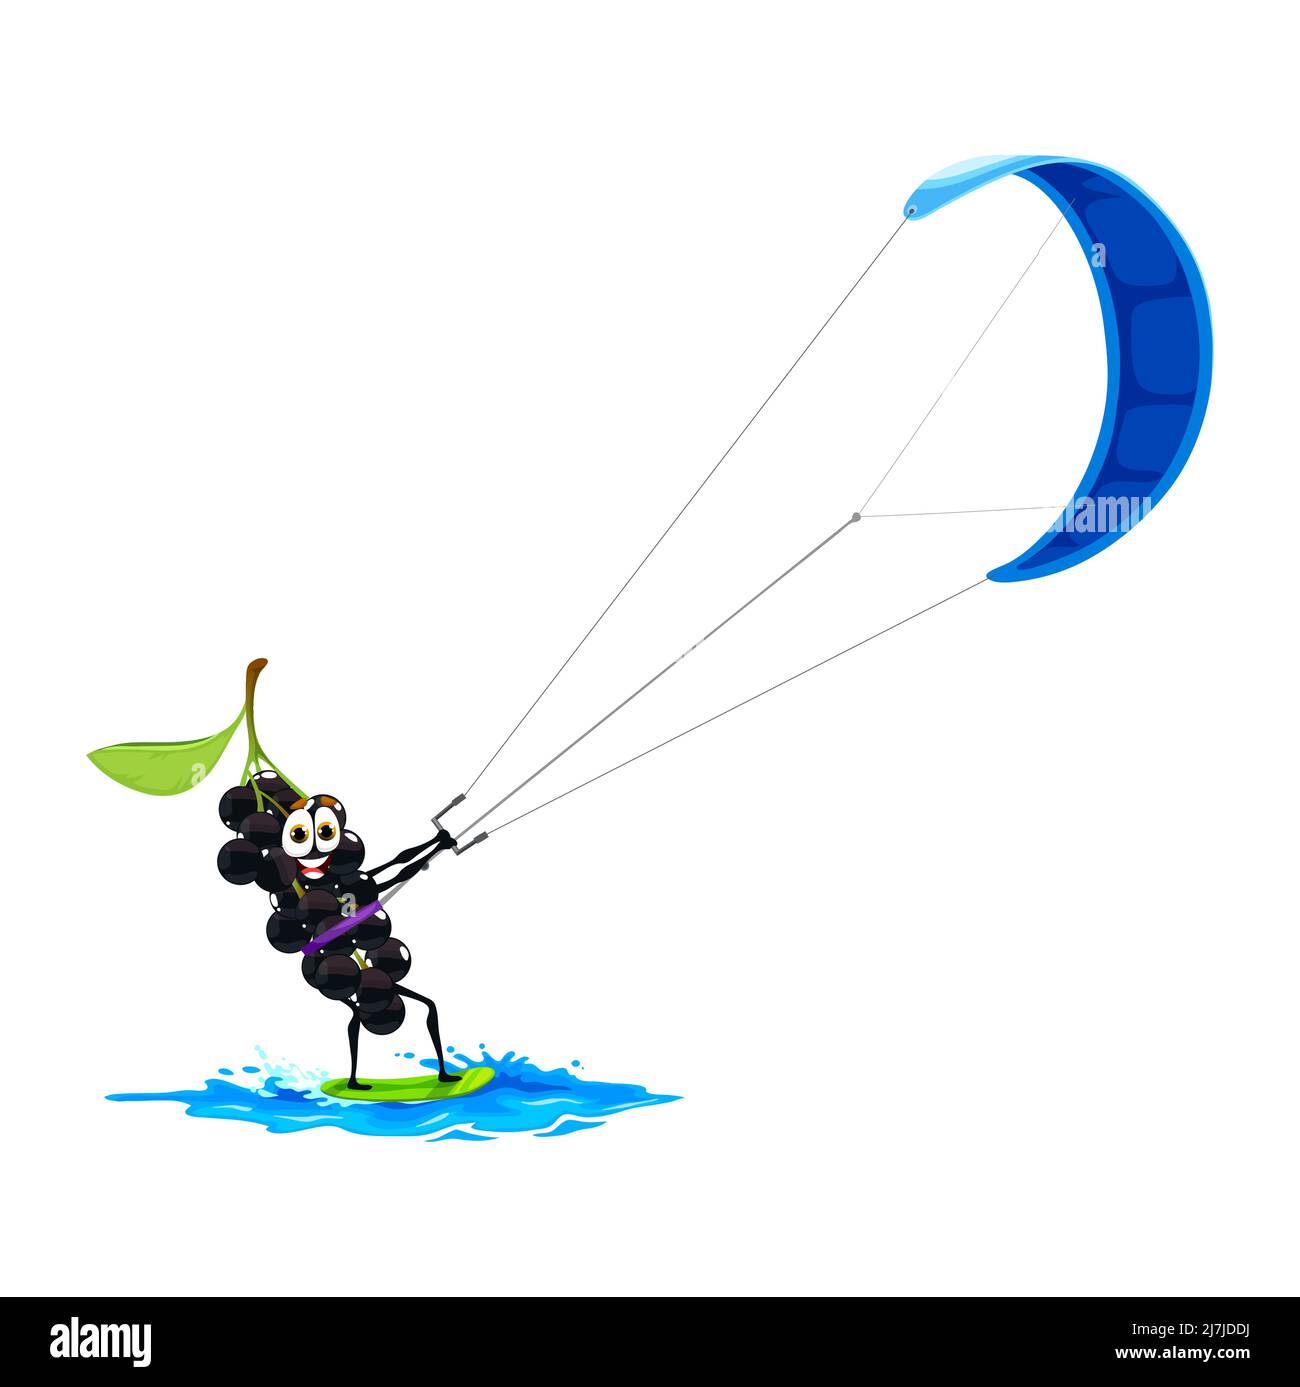 Personnage de dessin animé oiseau cerise sur le kitesurf. Amusant vecteur de sport de baie appréciant l'été eau kite surf sport. Sports nautiques, activités de vacances, détente de personnes en vacances Illustration de Vecteur